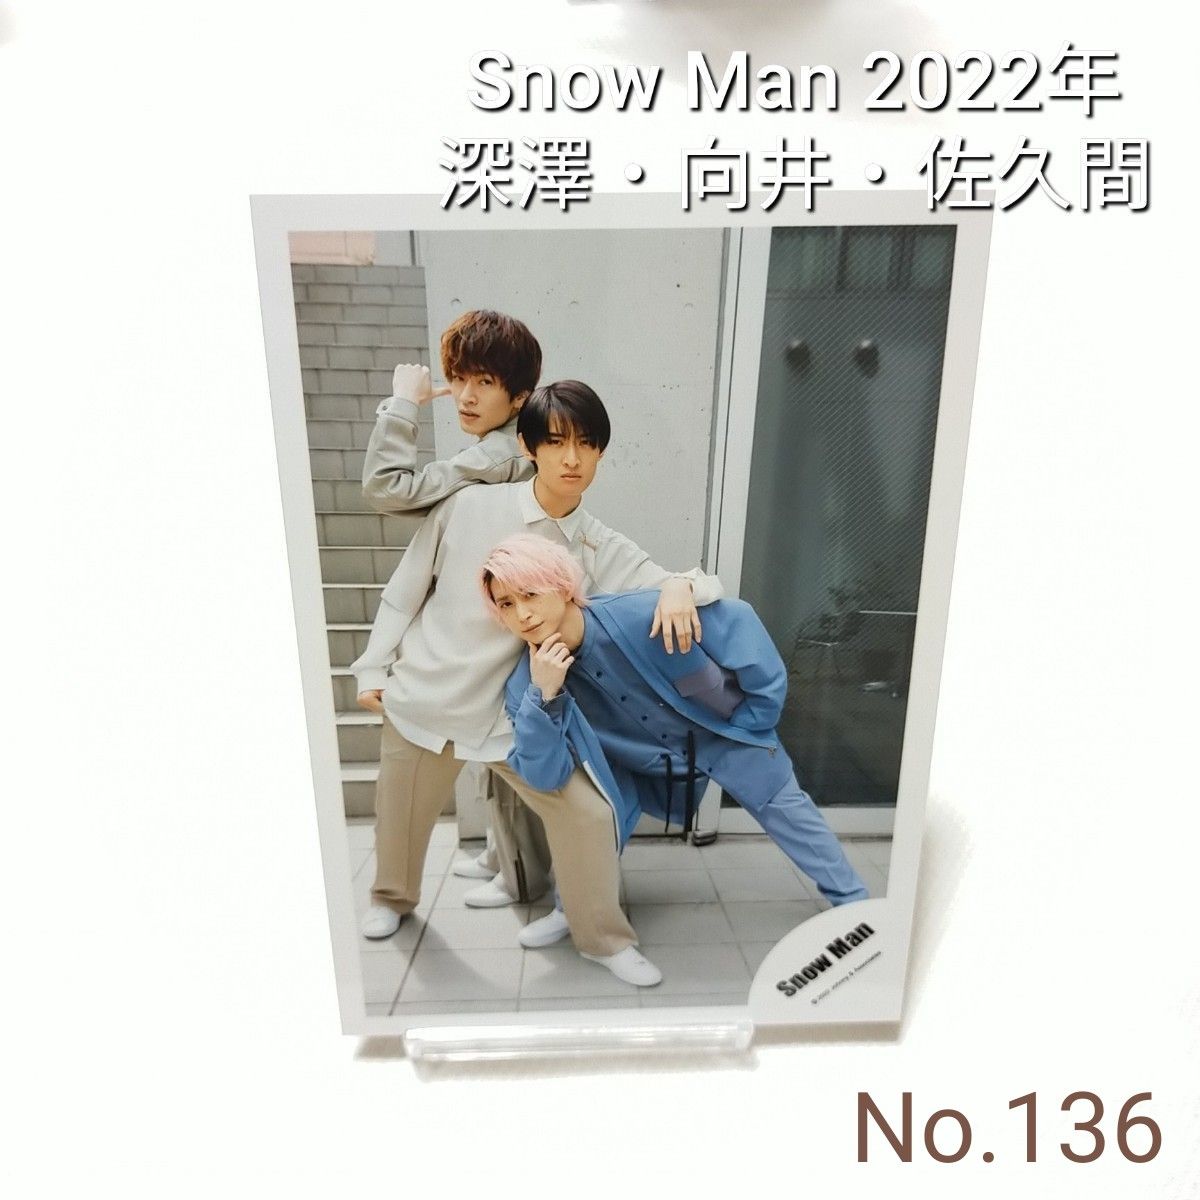 136 Snow Man 向井康二 佐久間大介 深澤辰哉 公式写真 スノーマン 2022年